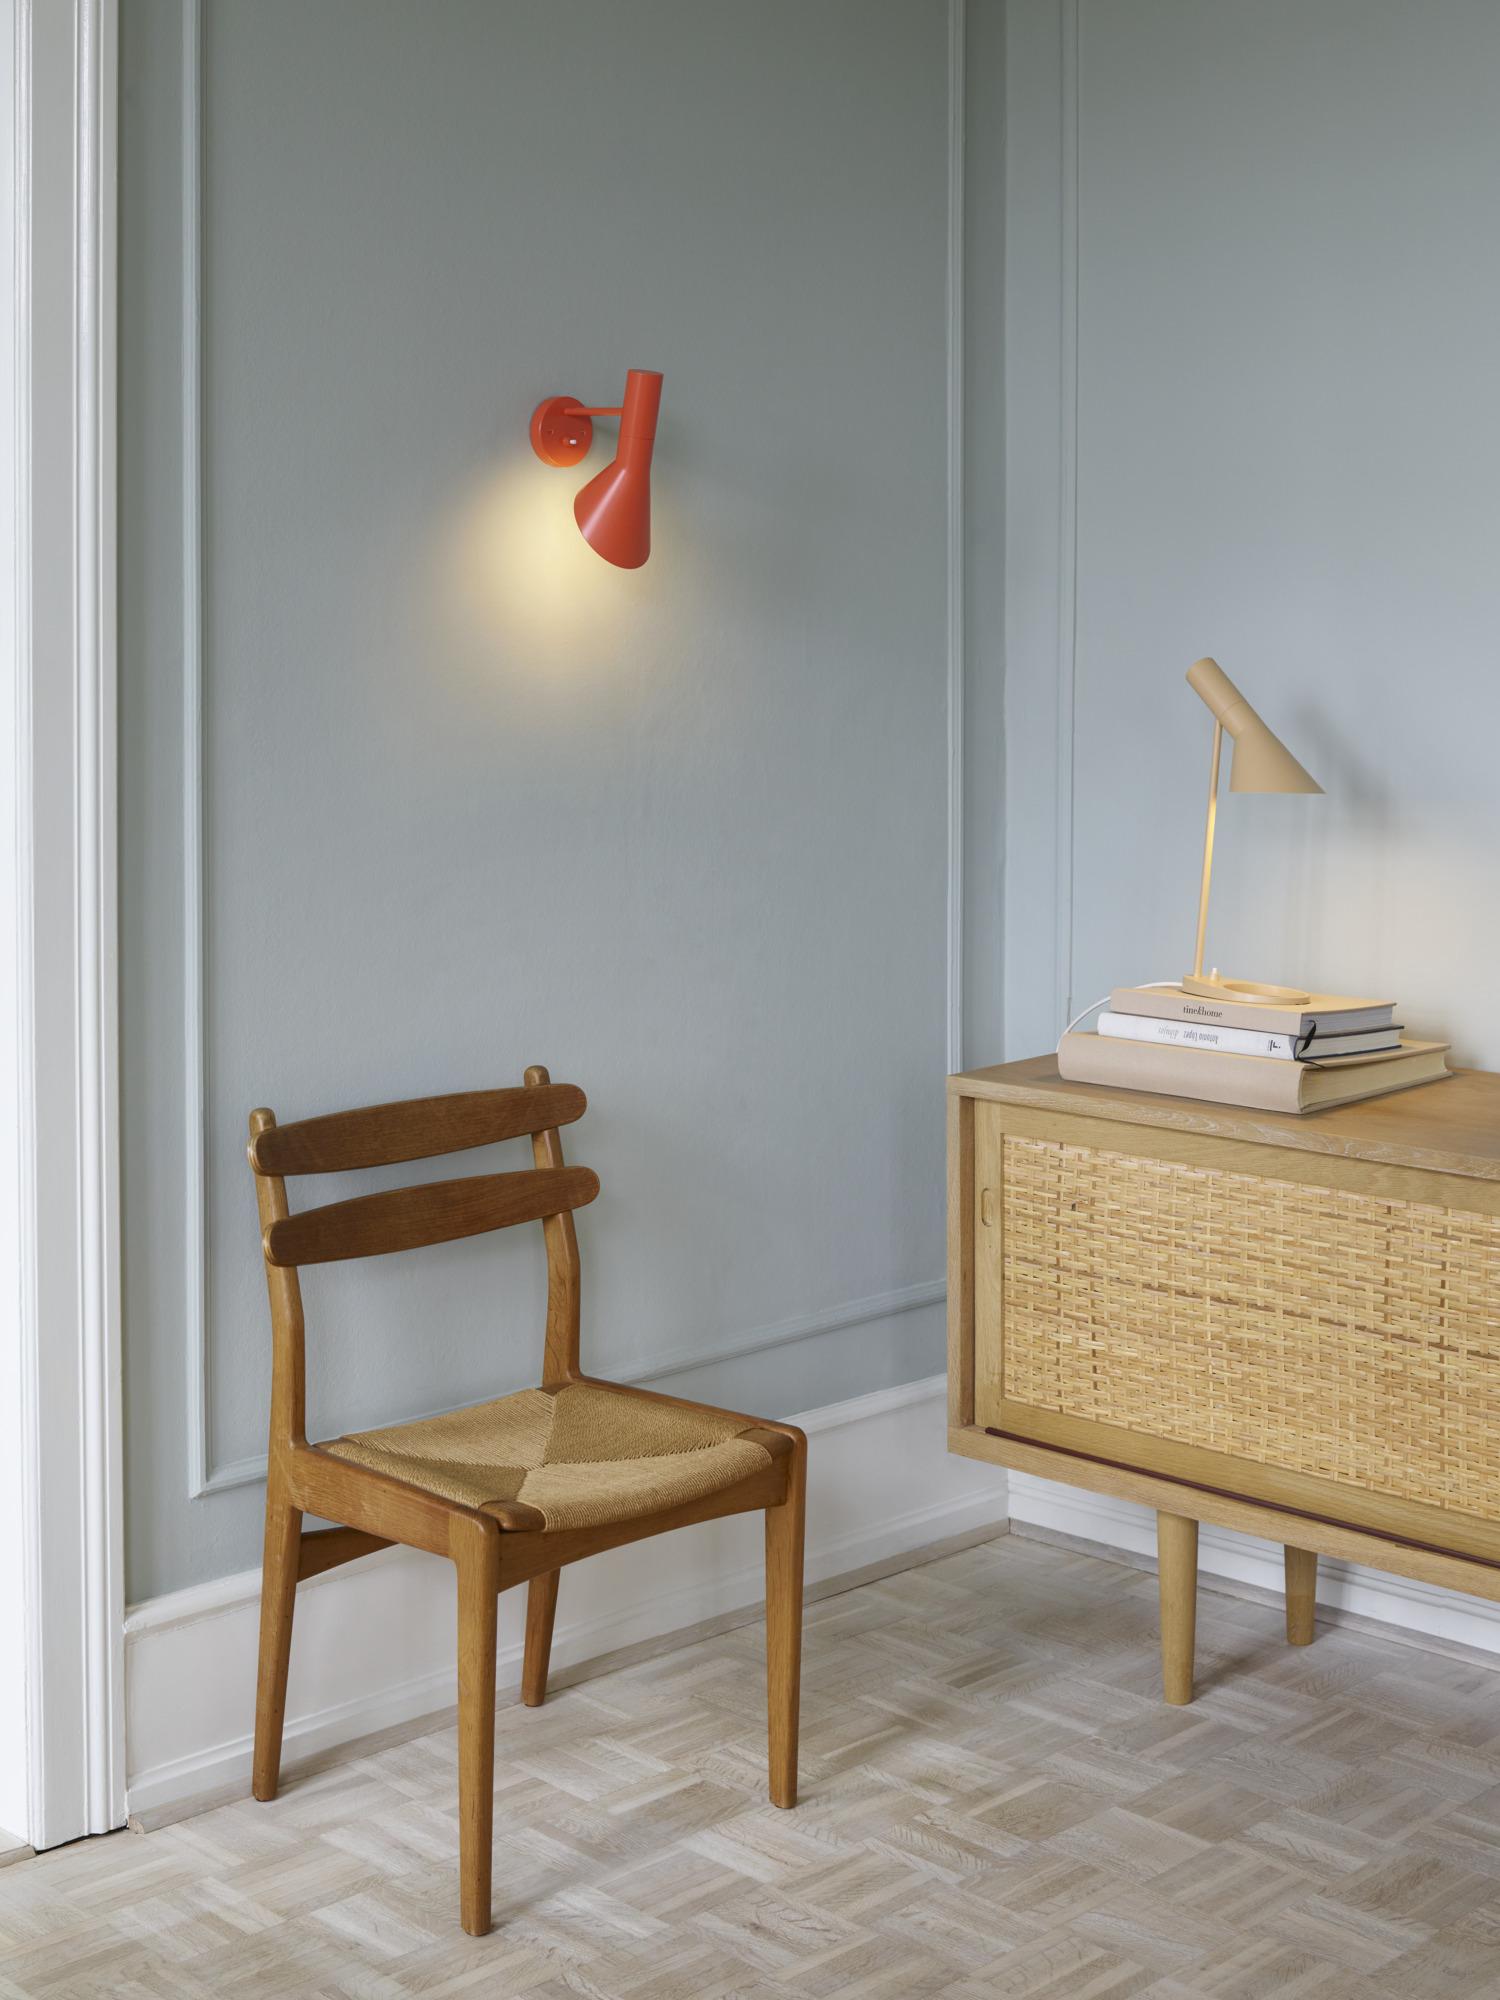 Arne Jacobsen AJ Wall Light for Louis Poulsen in Soft Lemon For Sale 3